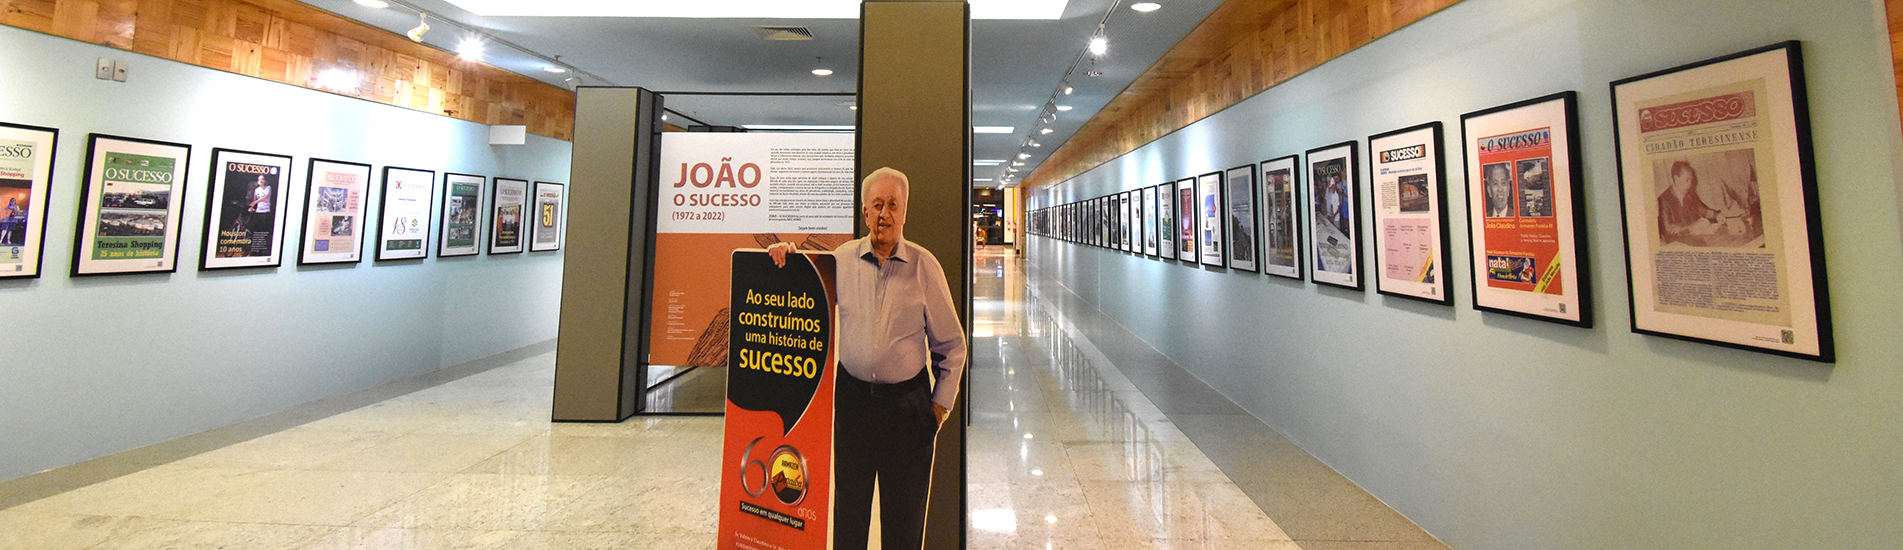 Mostra João - O Sucesso celebra 50 anos da Revista do Grupo